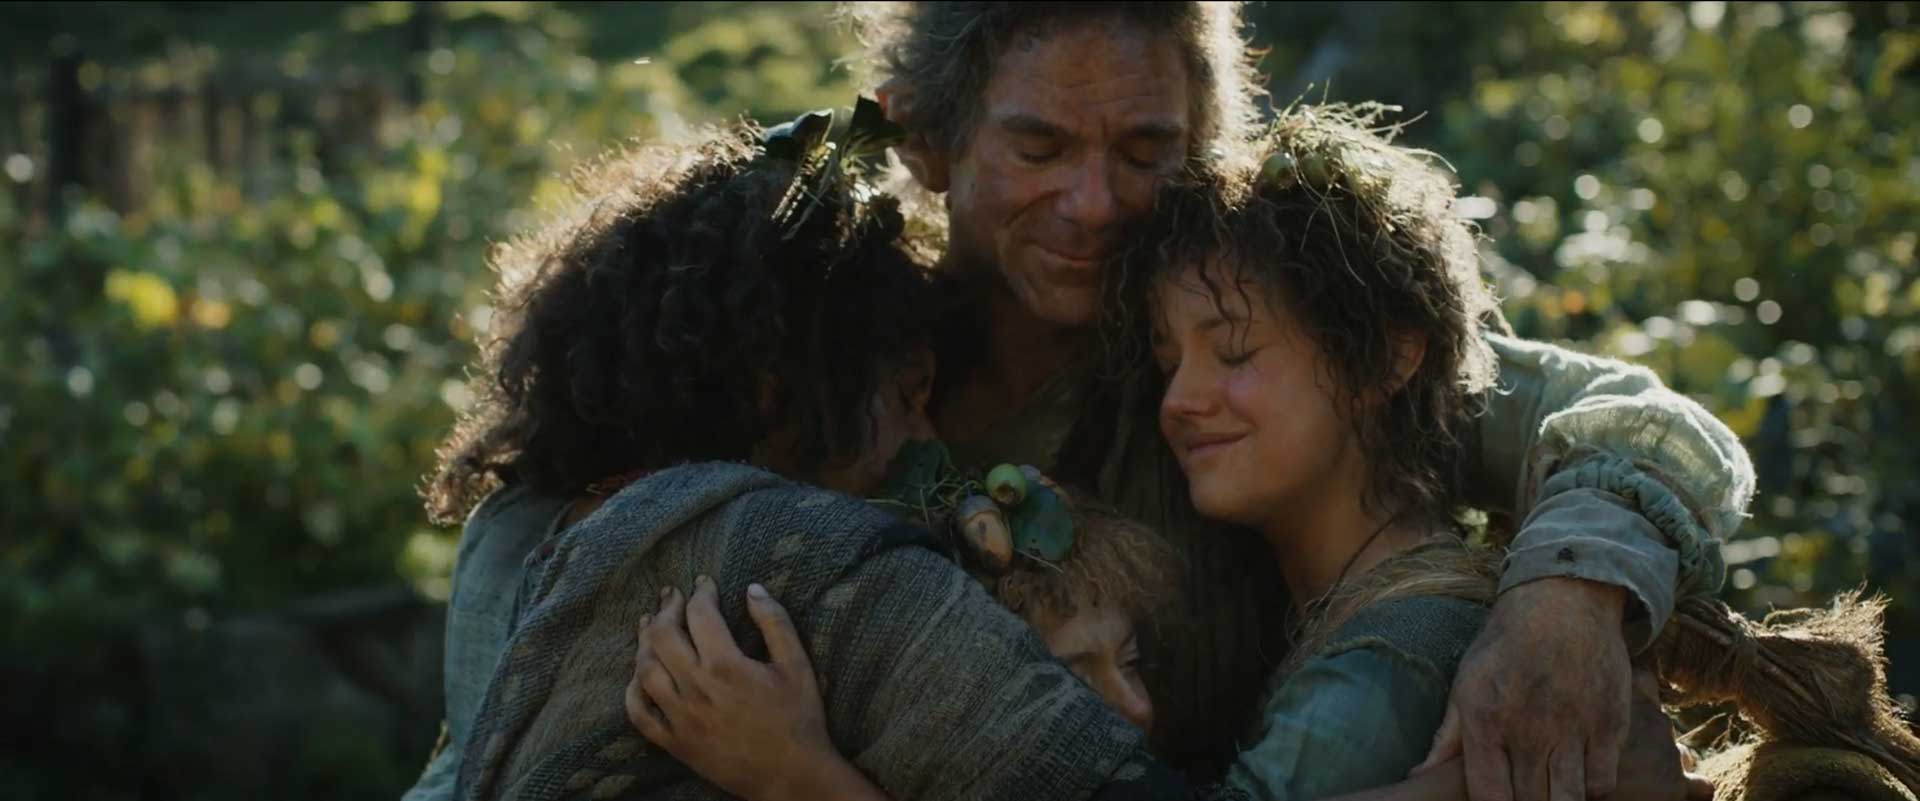 در آغوش کشیده شدن نوری برندیفوت توسط اعضای خانواده خود در قسمت ۸ فصل ۱ سریال The Lord of the Rings